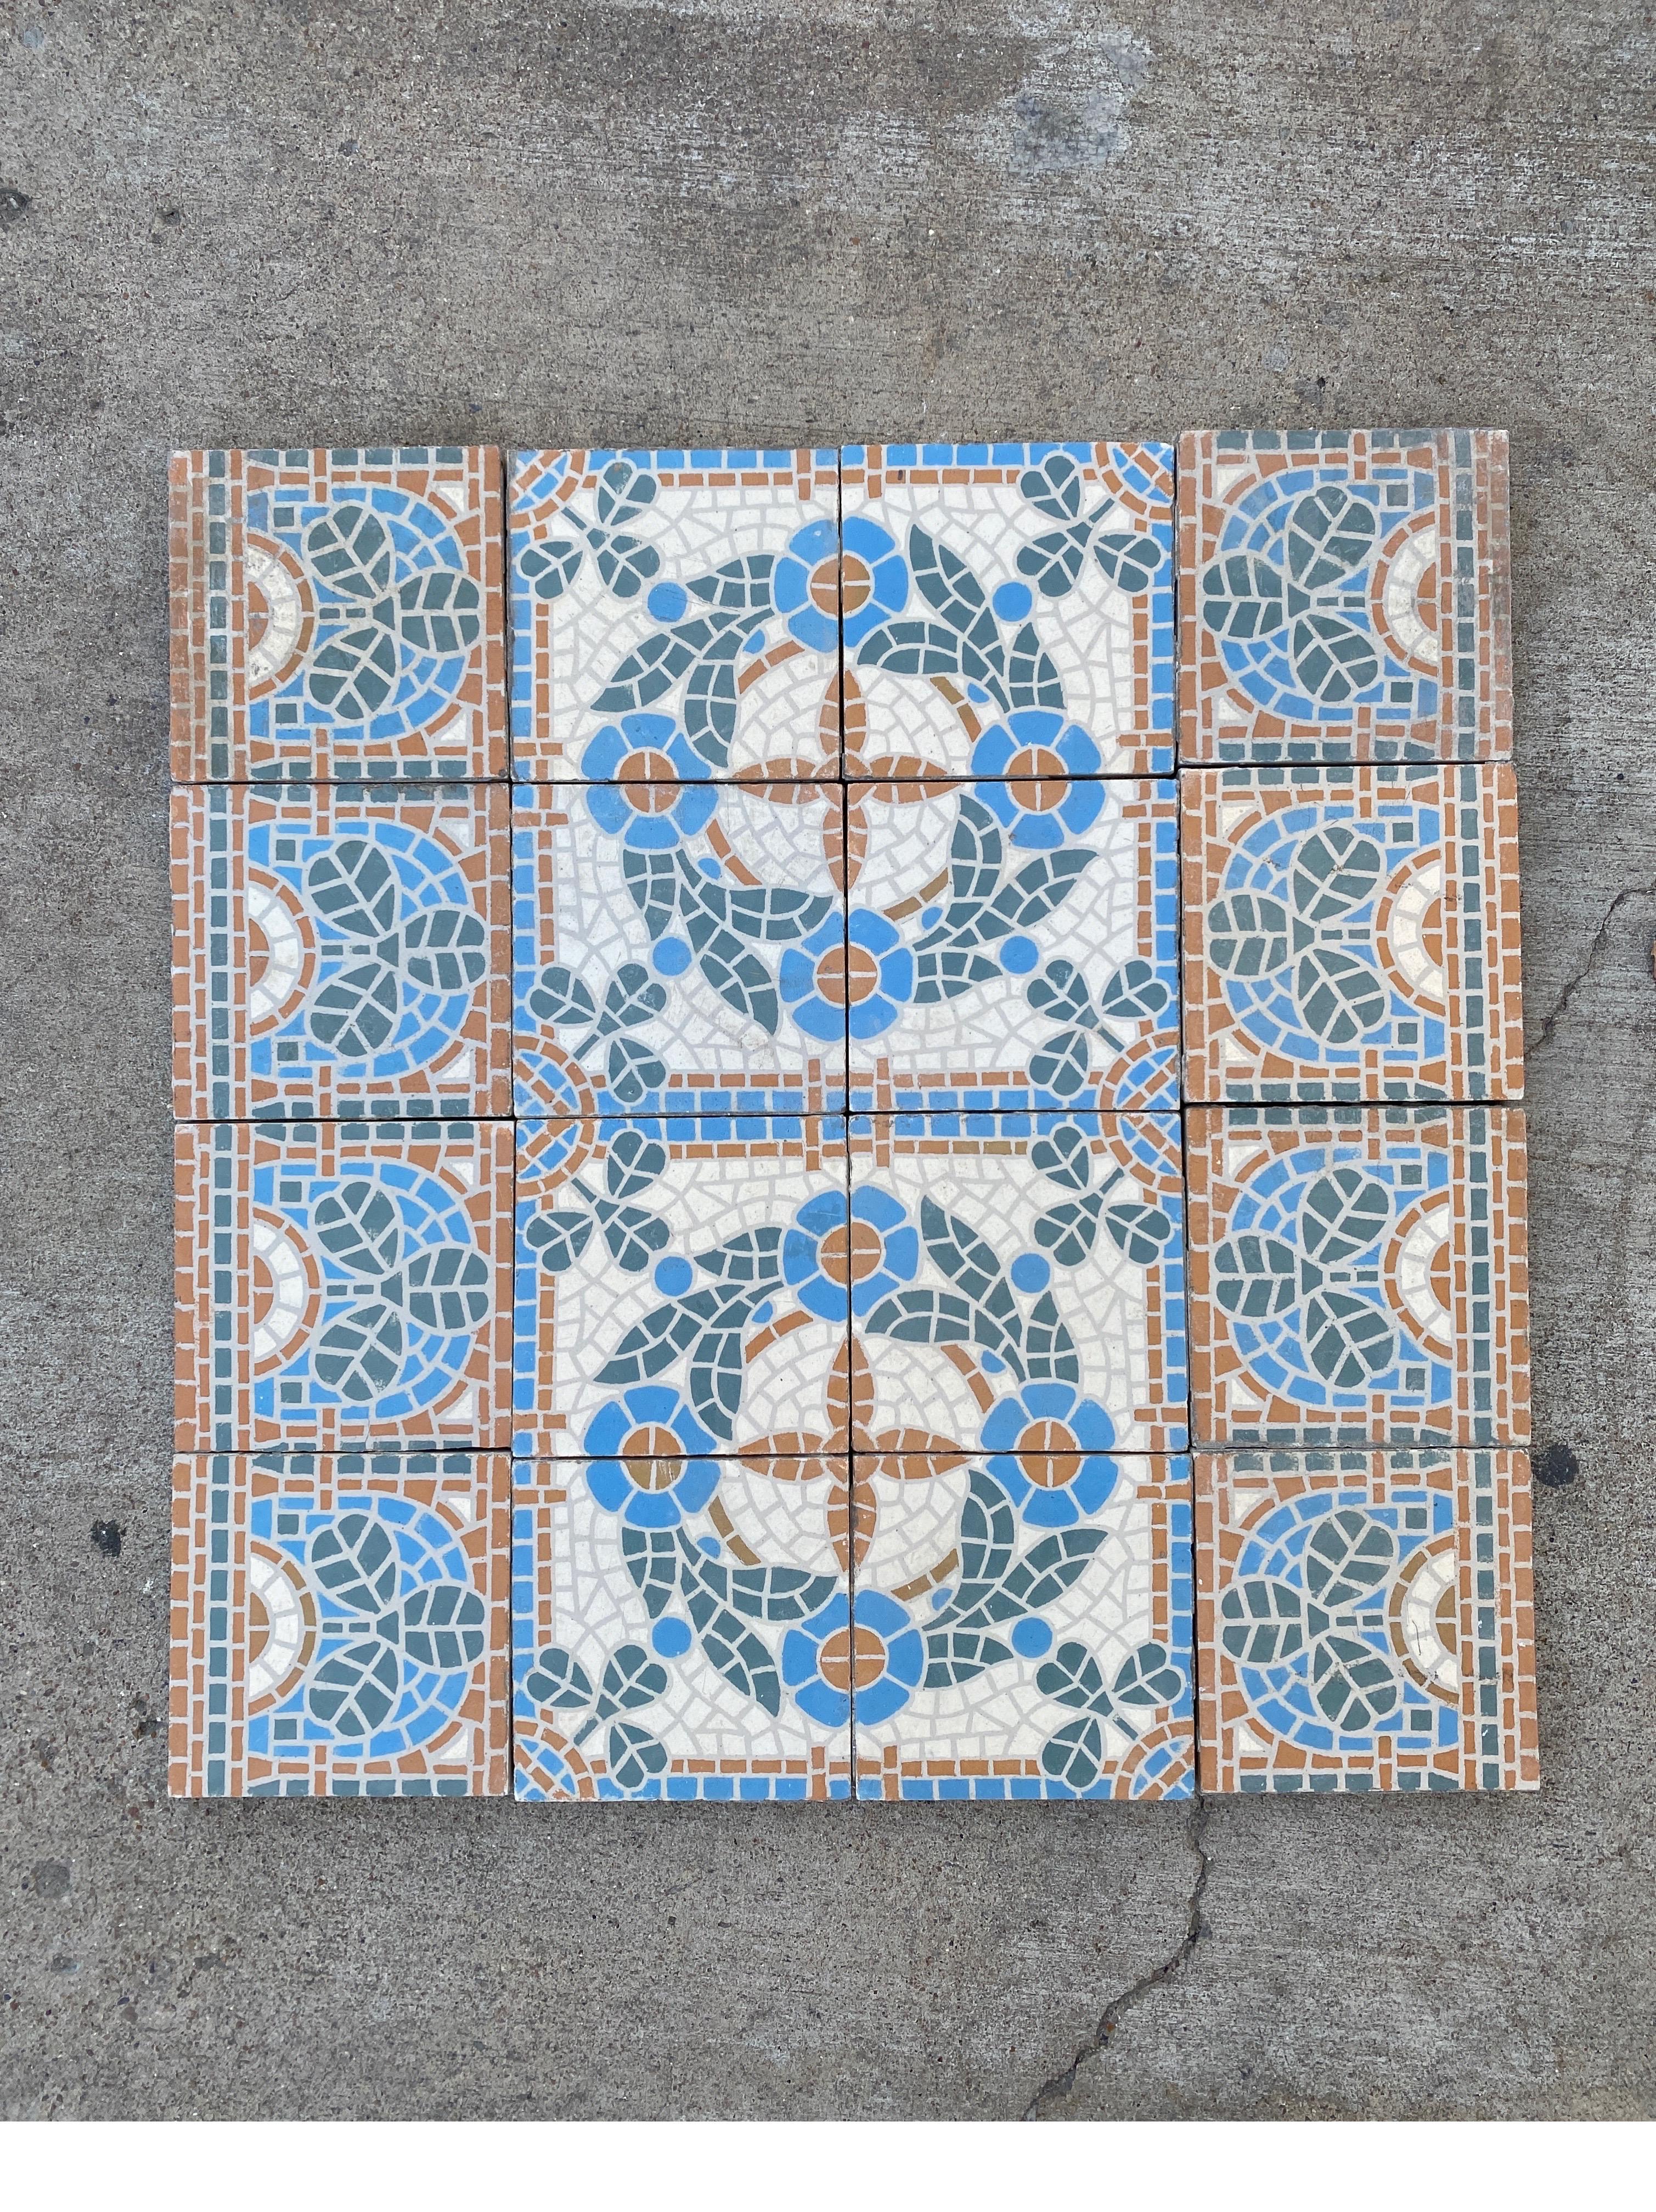 Beautiful blue and orange encaustic tiles.